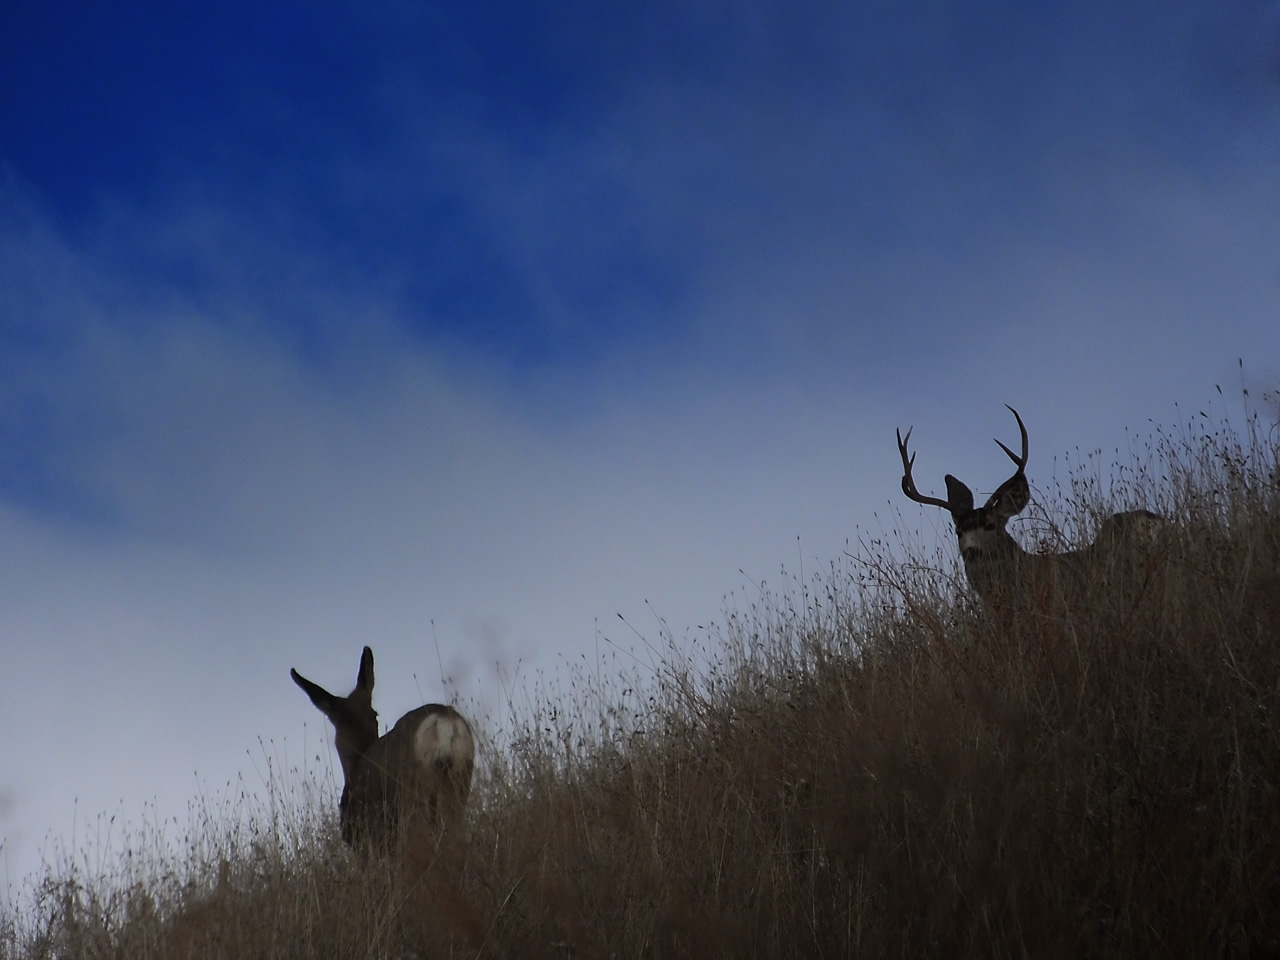 HS50exr Photo of Mule Deer buck and doe